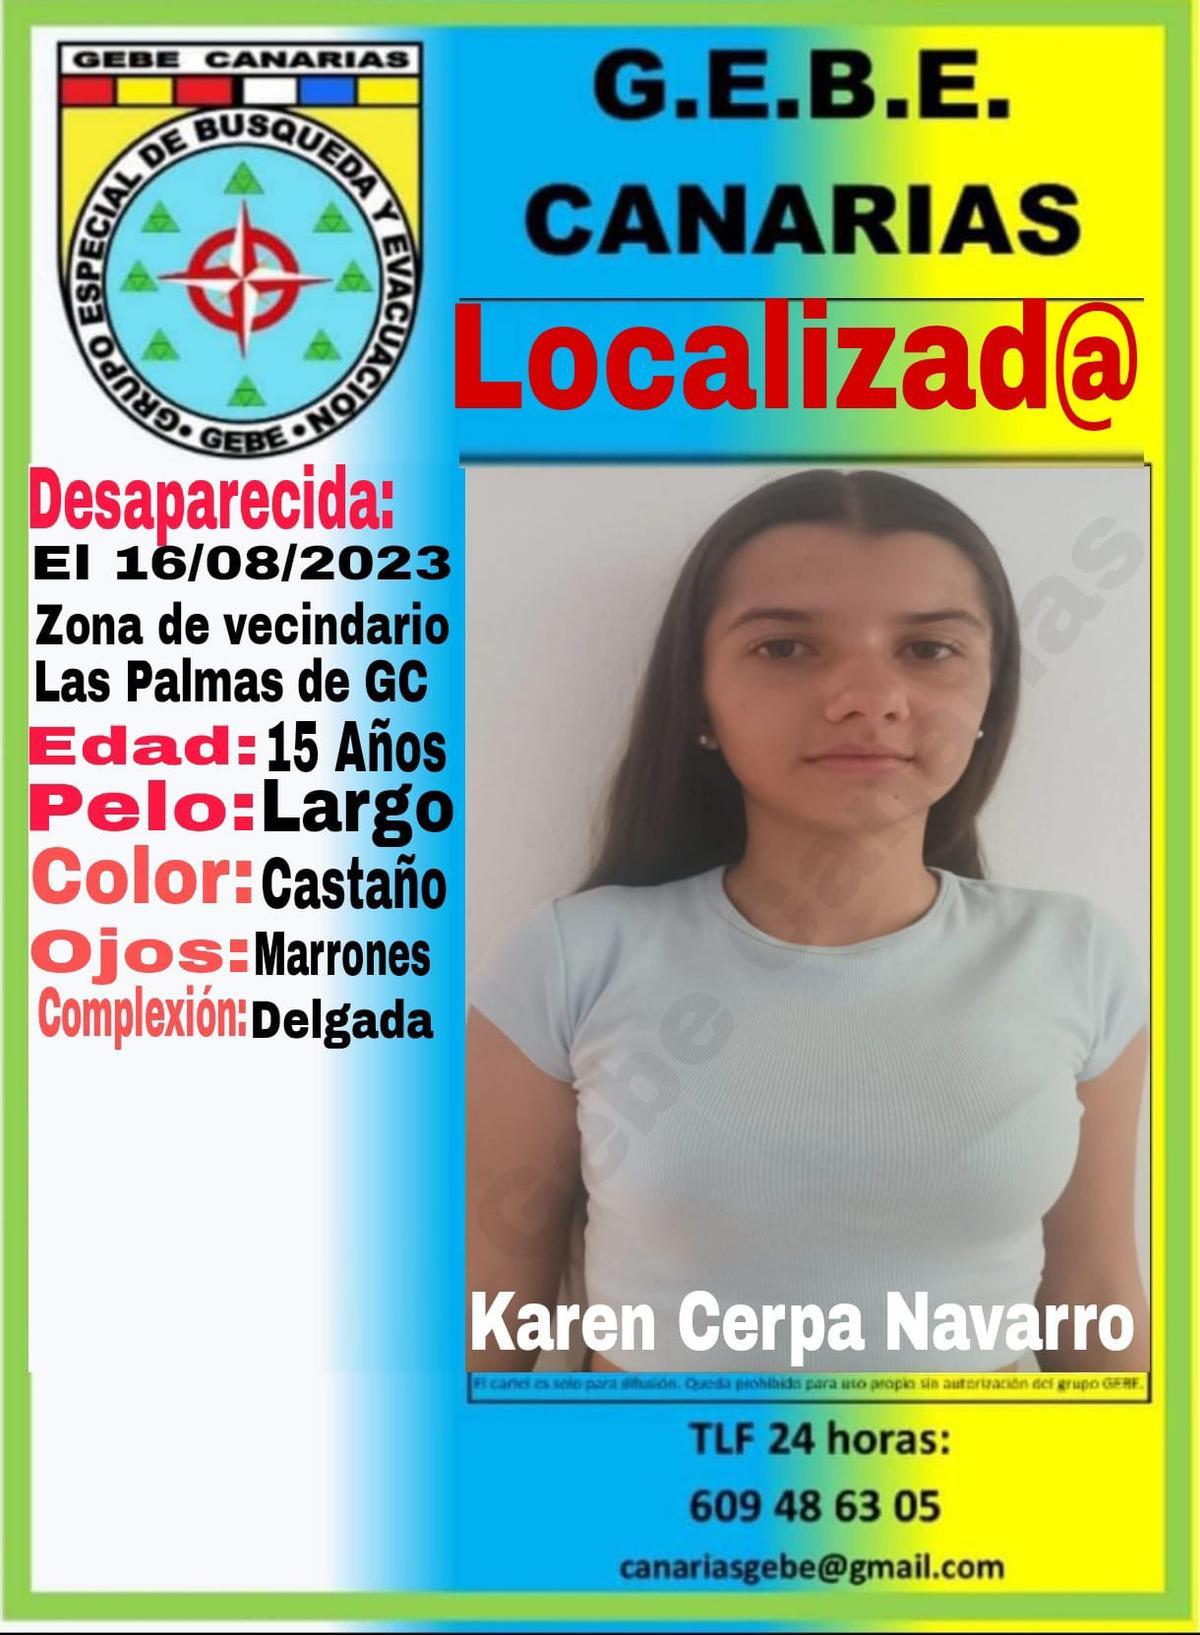 Karen Cerpa Navarro